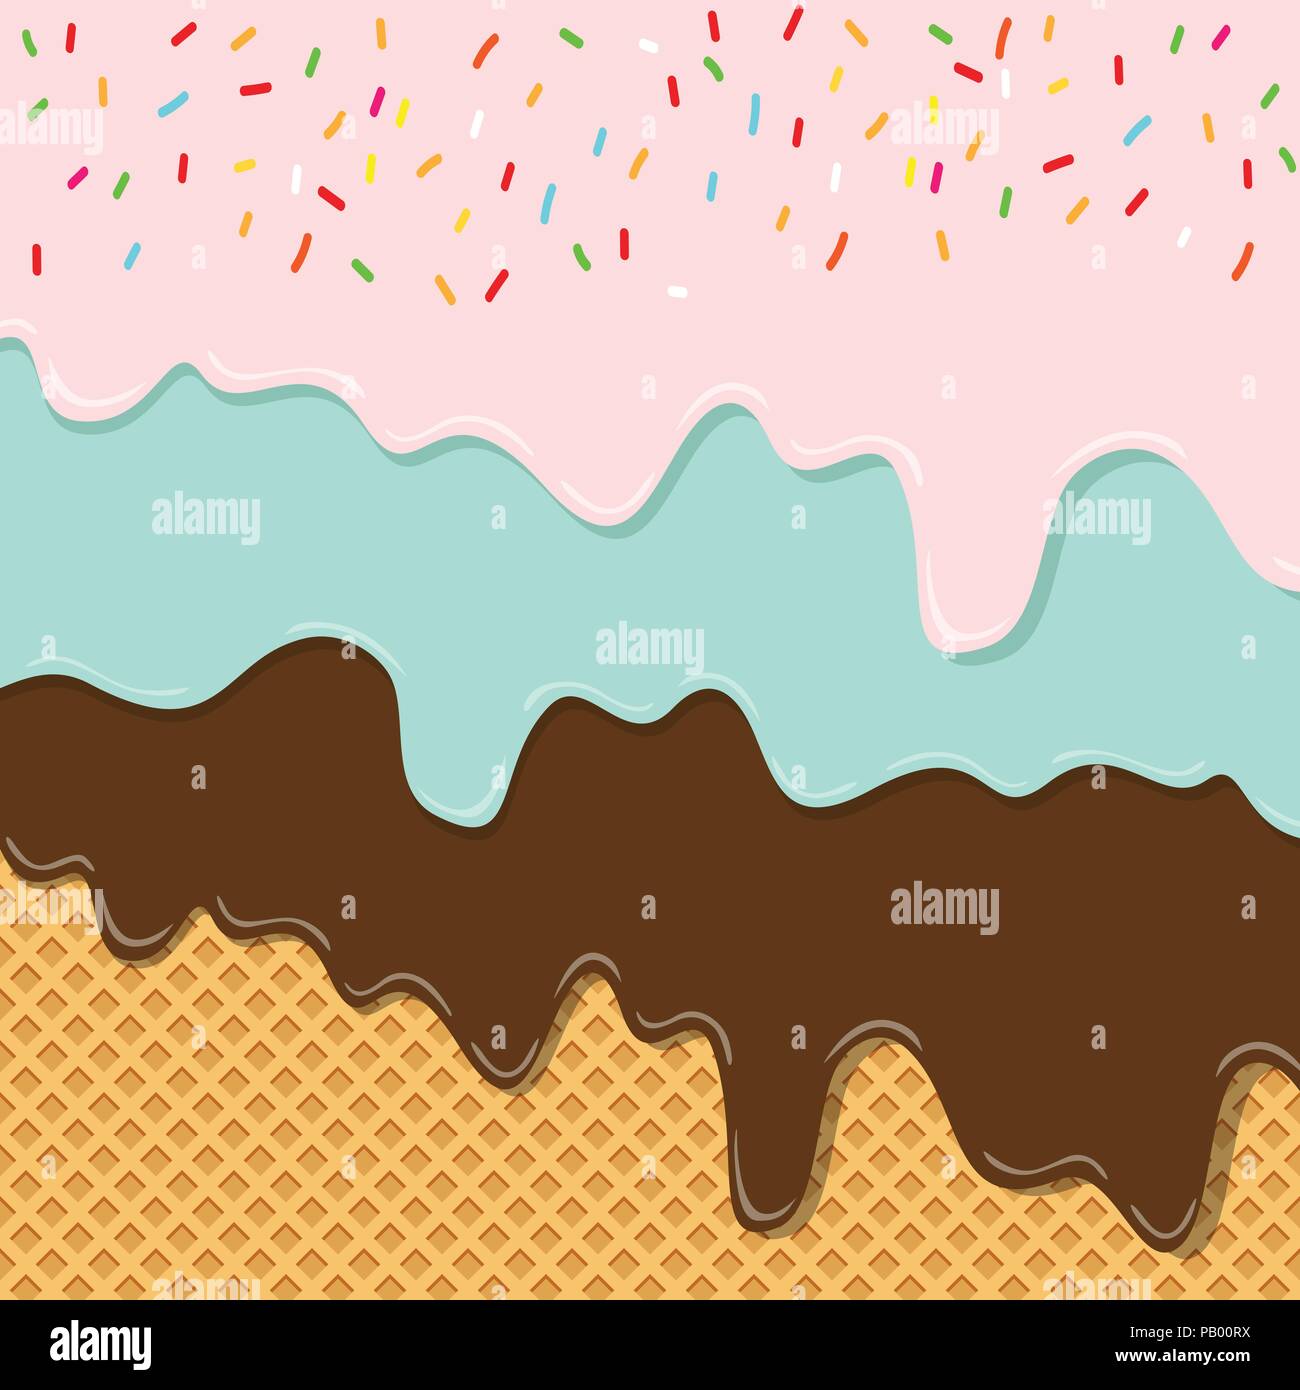 Süße geschmack Eis Textur Schicht schmolz auf Wafer Hintergrund Muster Tapete. Vector Illustration. druckvolle kreative Pastell- und Pastelltönen Minimalismus Stock Vektor